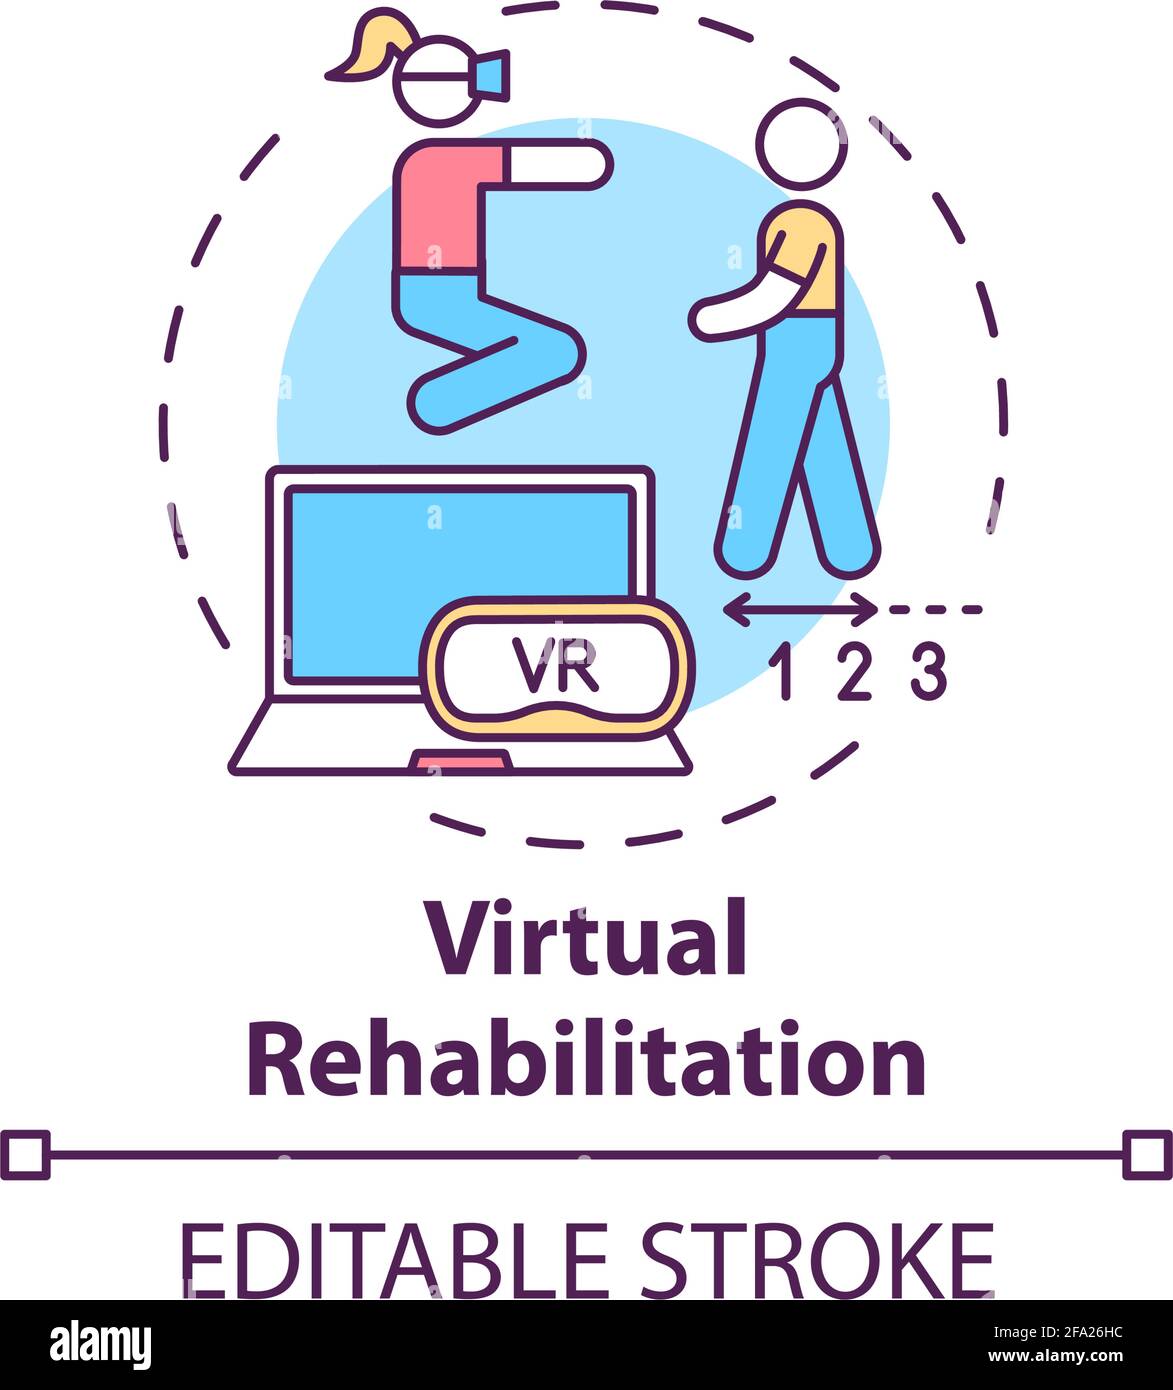 Virtual rehabilitation concept icon Stock Vector